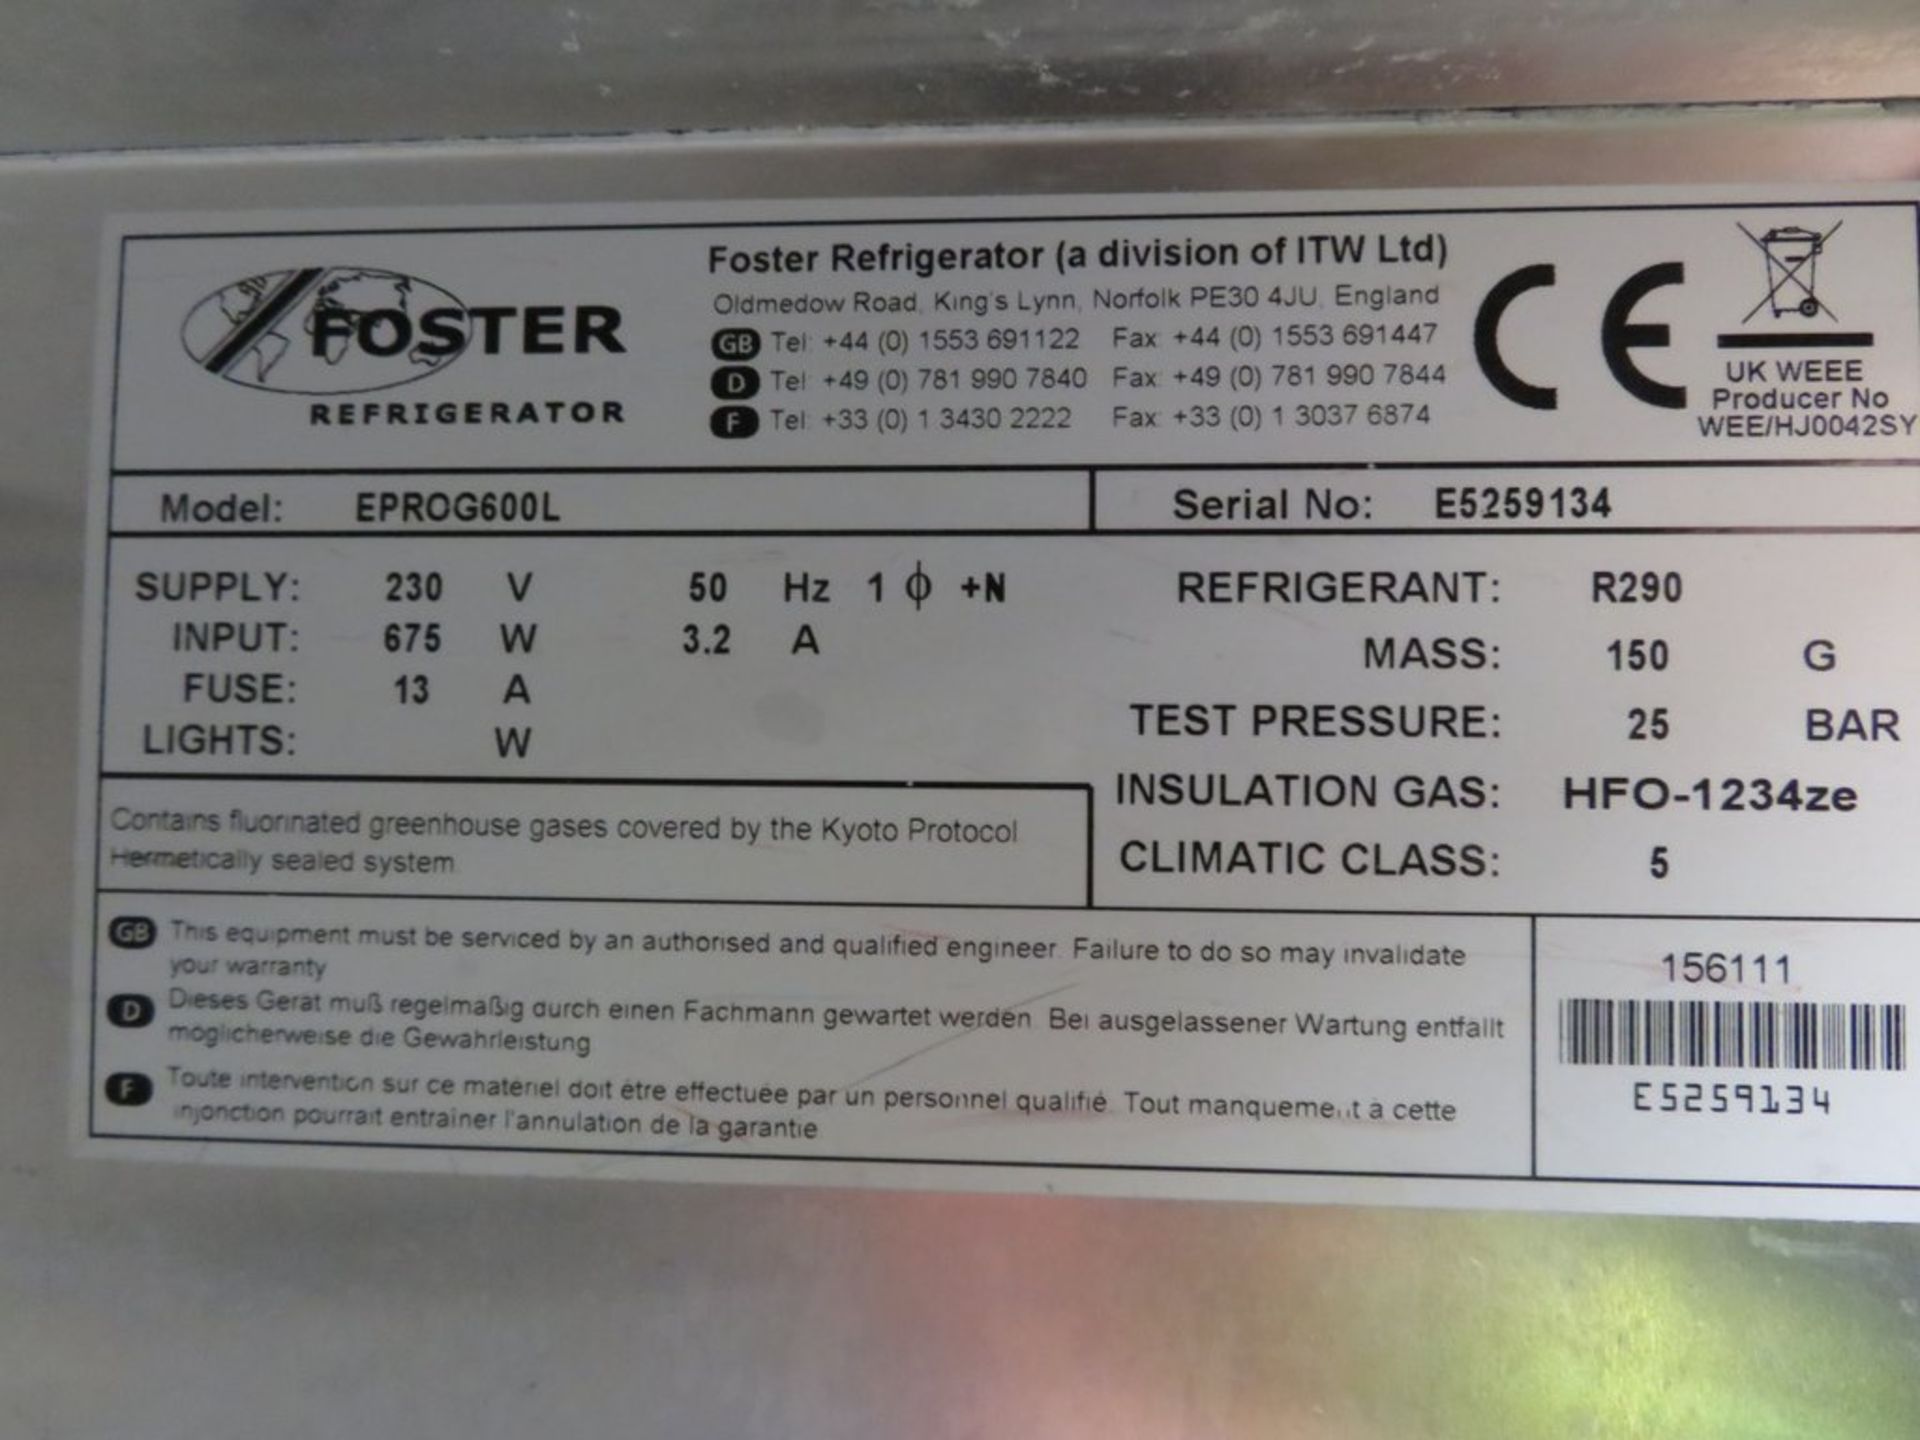 Foster EPROG600L single door freezer - Image 7 of 7